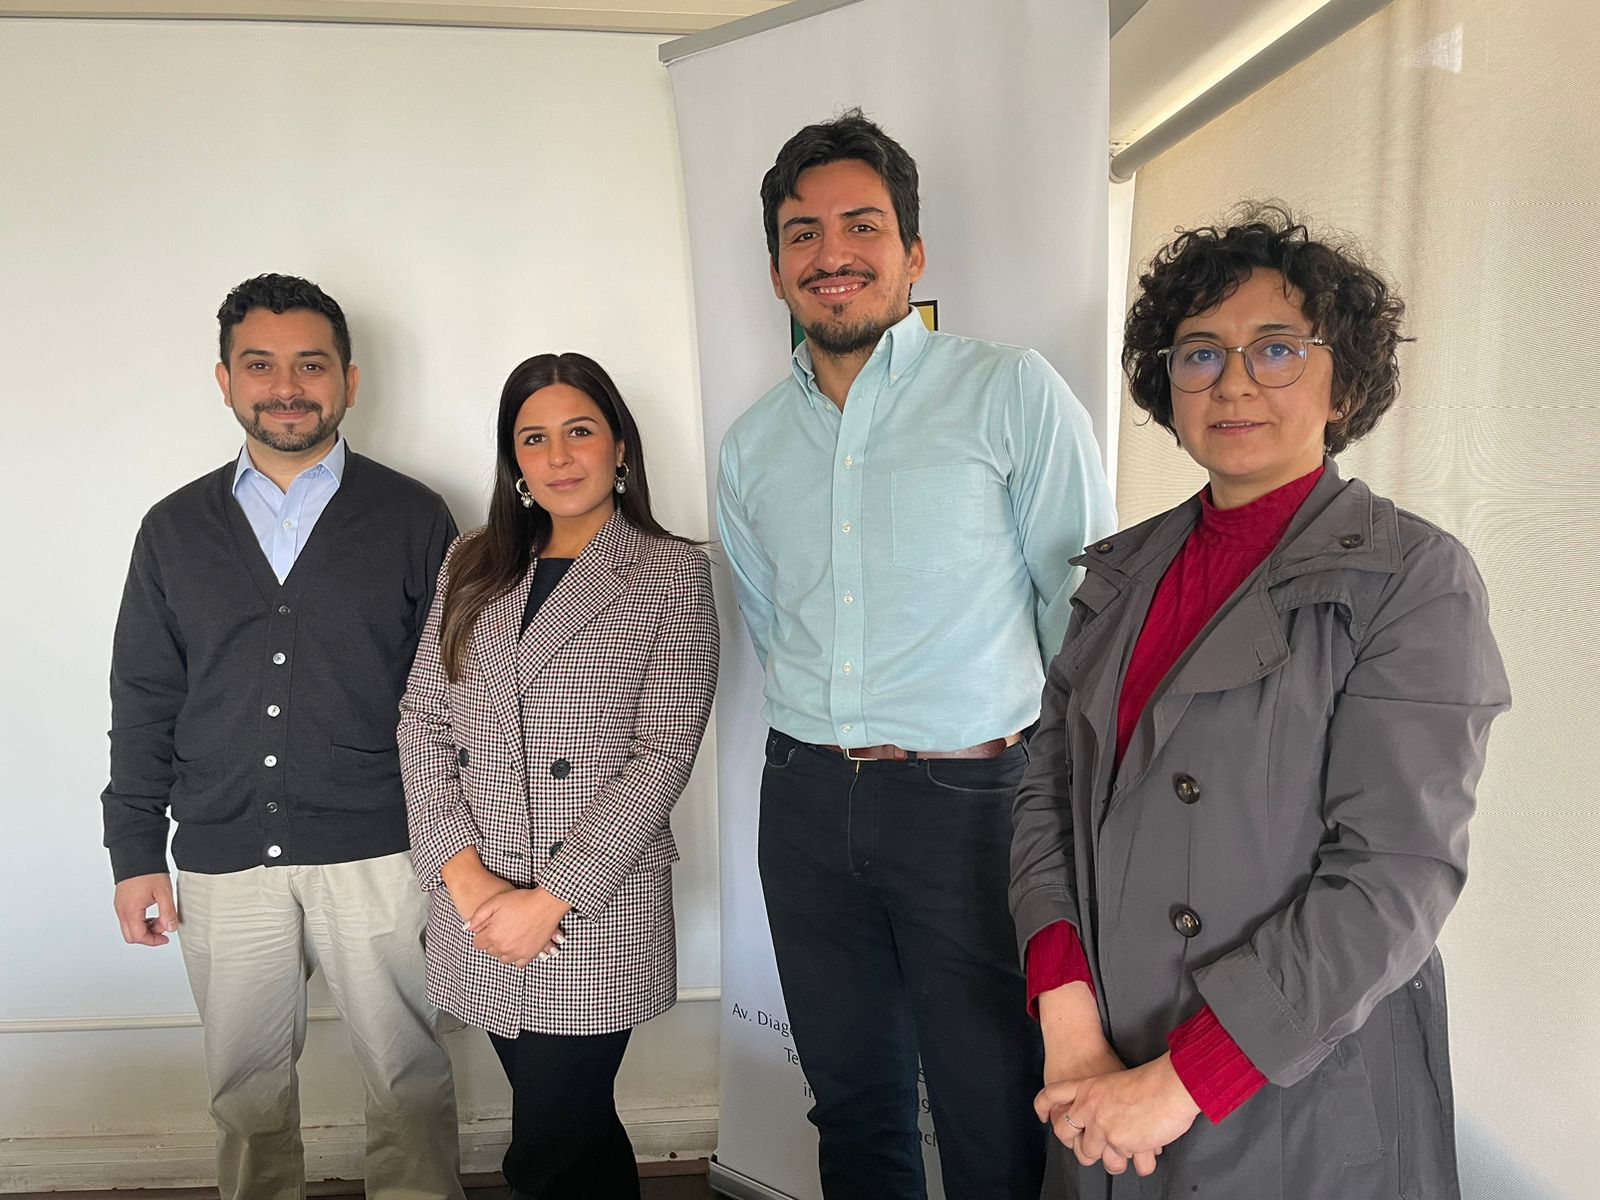 Equipo de Coordinación U. de Chile del Convenio SERMIG-CRUCH: (de izquierda a derecha) Leonardo Muñoz, Montserrat Hernández, Osvaldo Guzmán y Valentina Letelier.